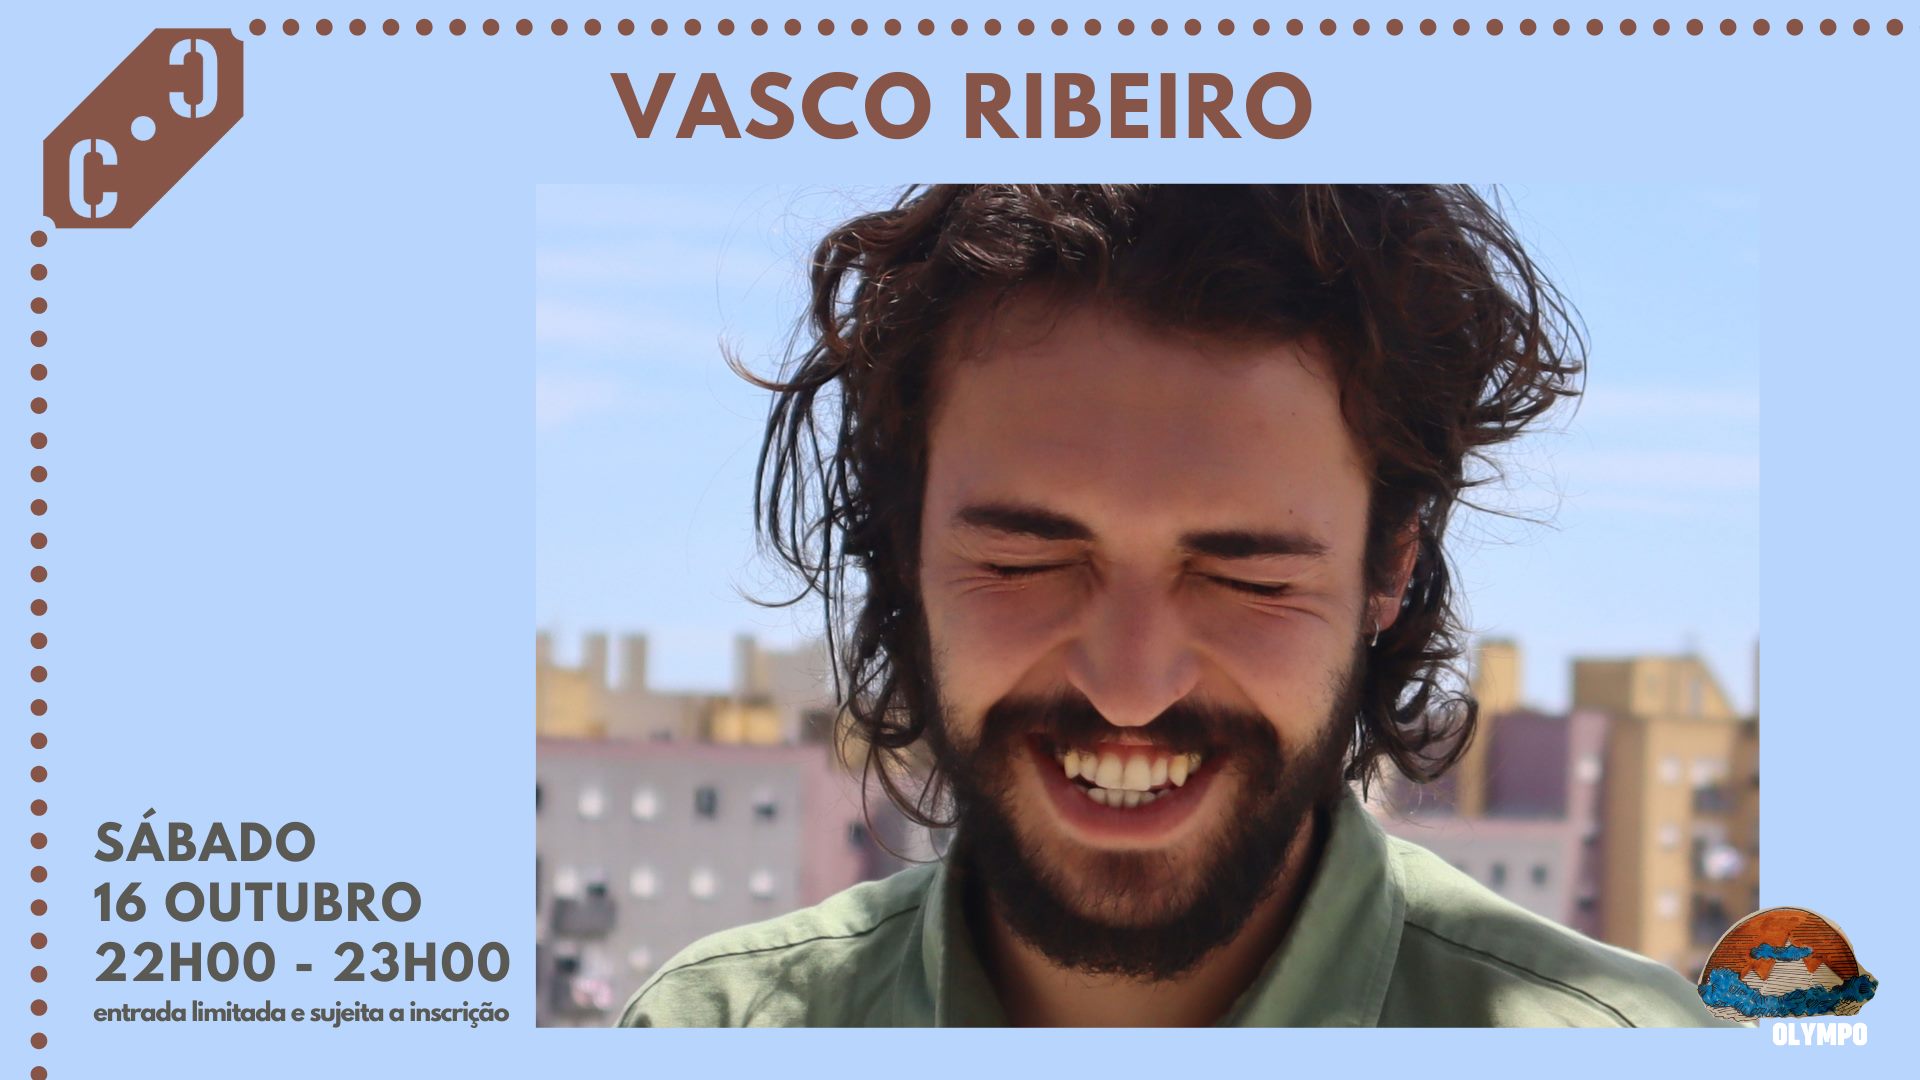 Vasco Ribeiro